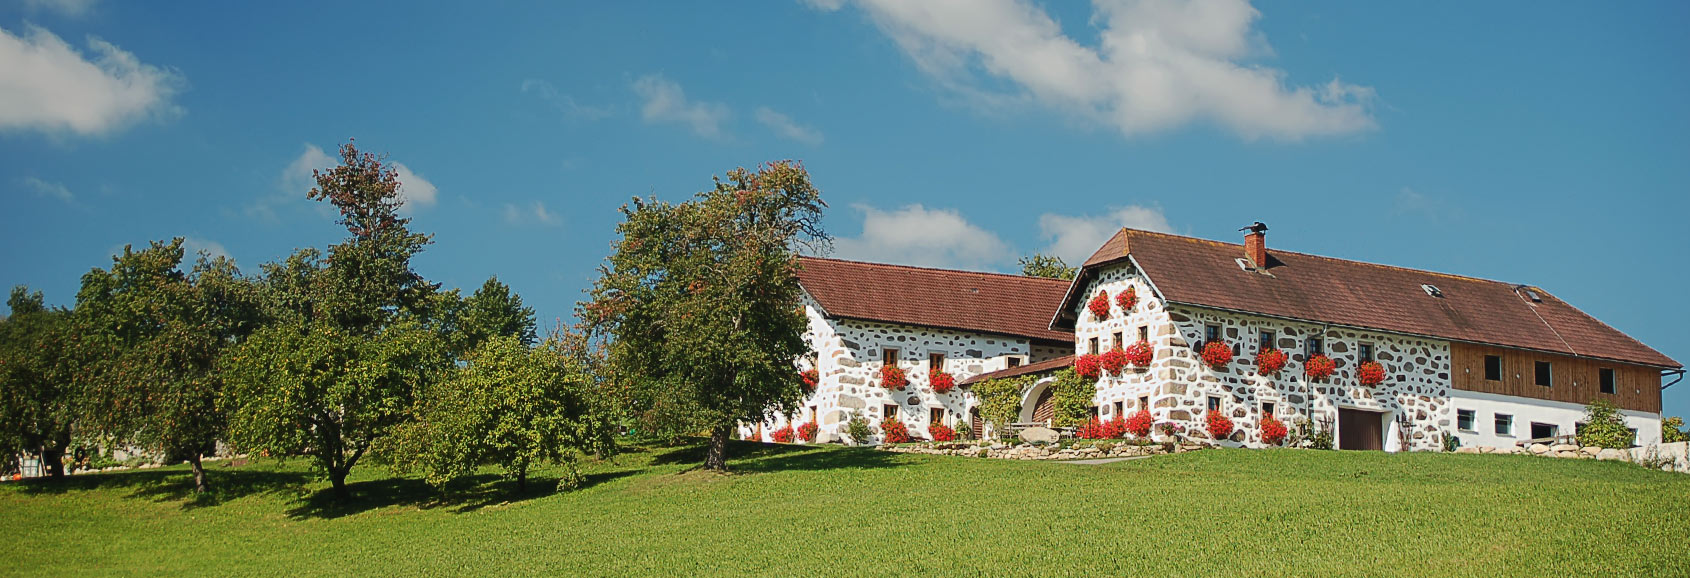 Bauernhof in Niederbayern